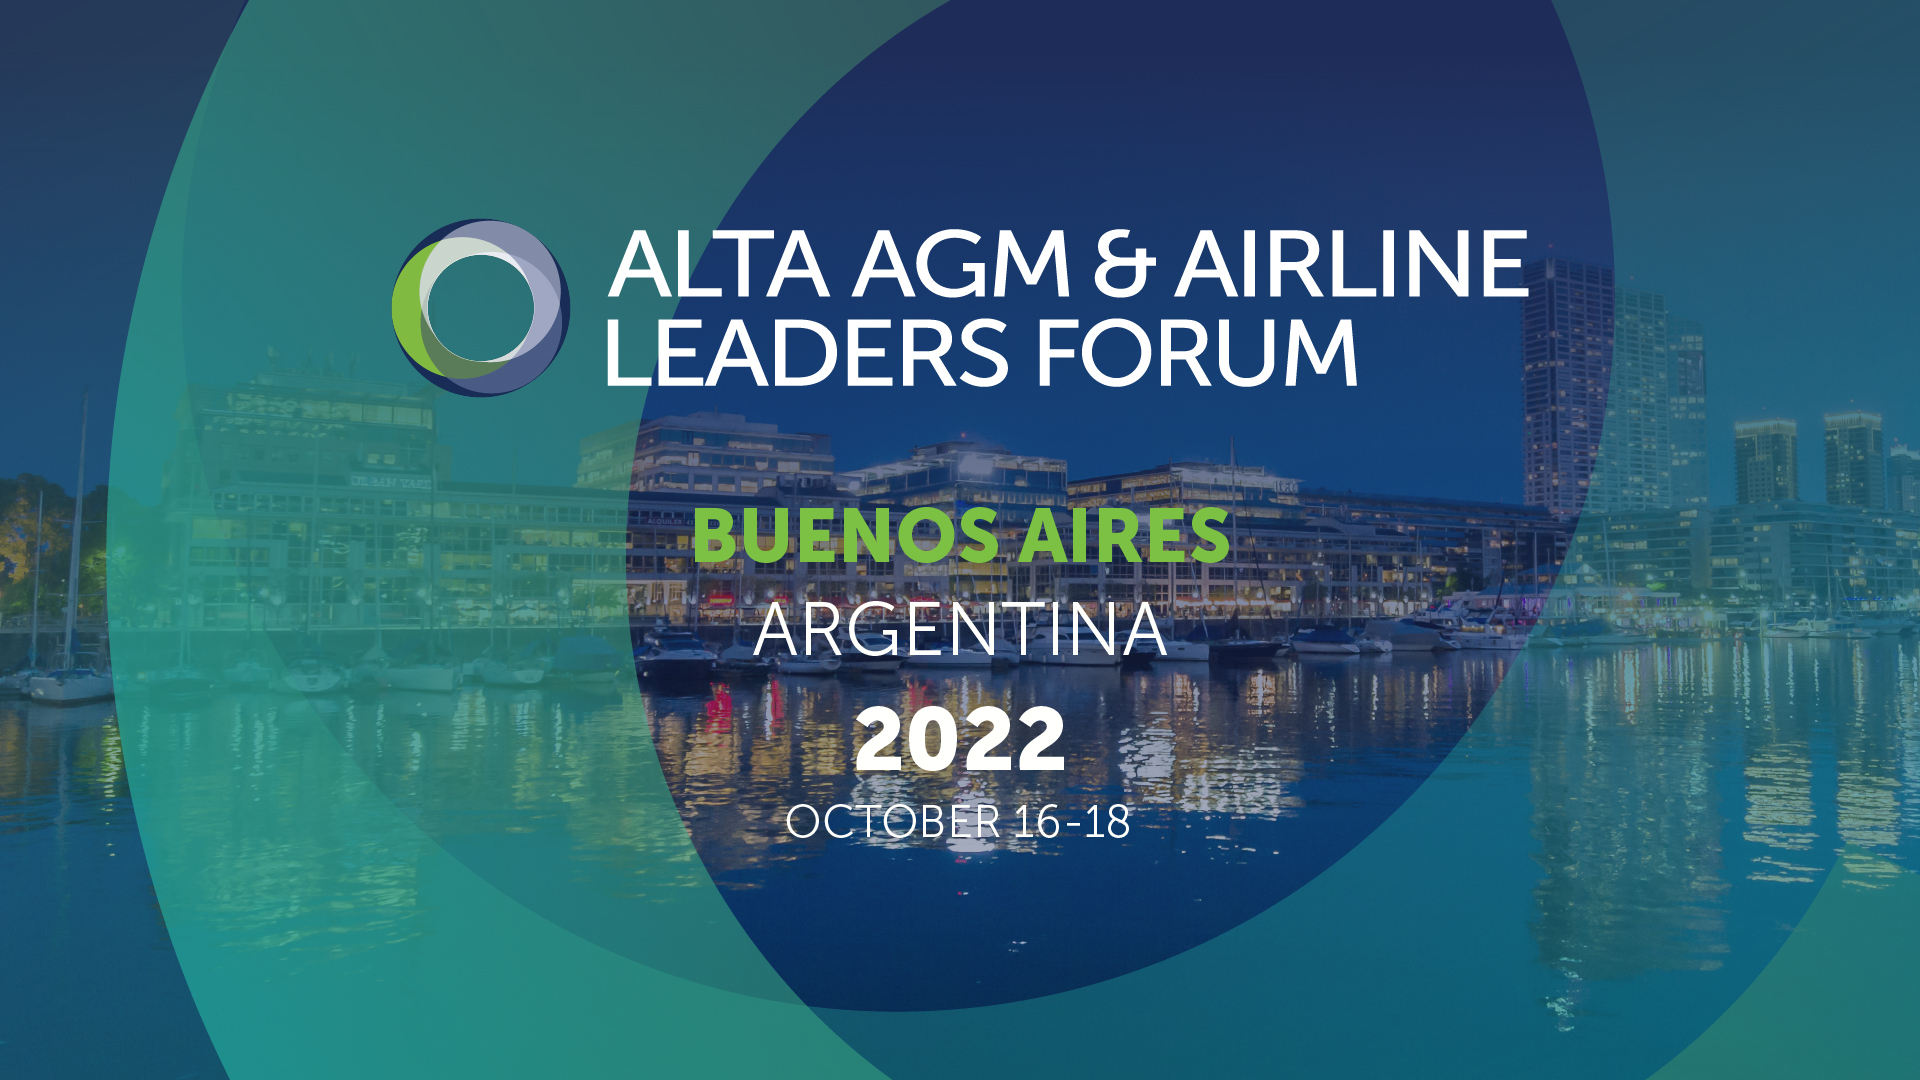 ALTA NEWS - La Argentina recibe a los líderes de la aviación latinoamericana y del Caribe en el ALTA AGM & Airline Leaders Forum